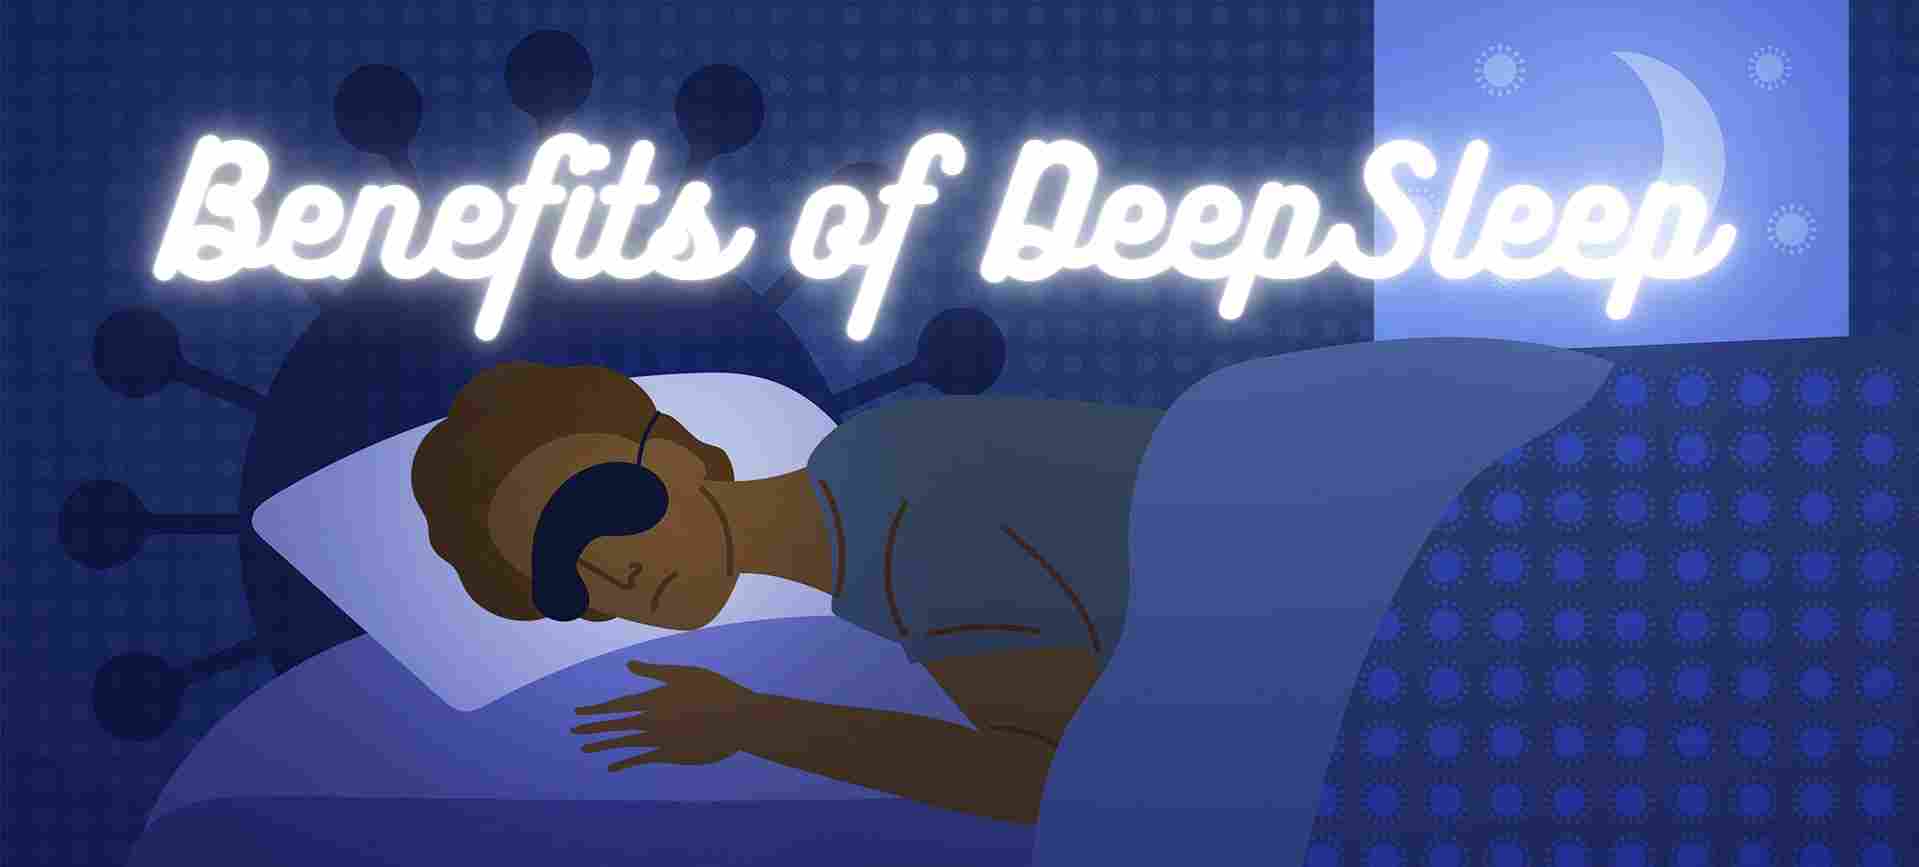 increase deep sleep